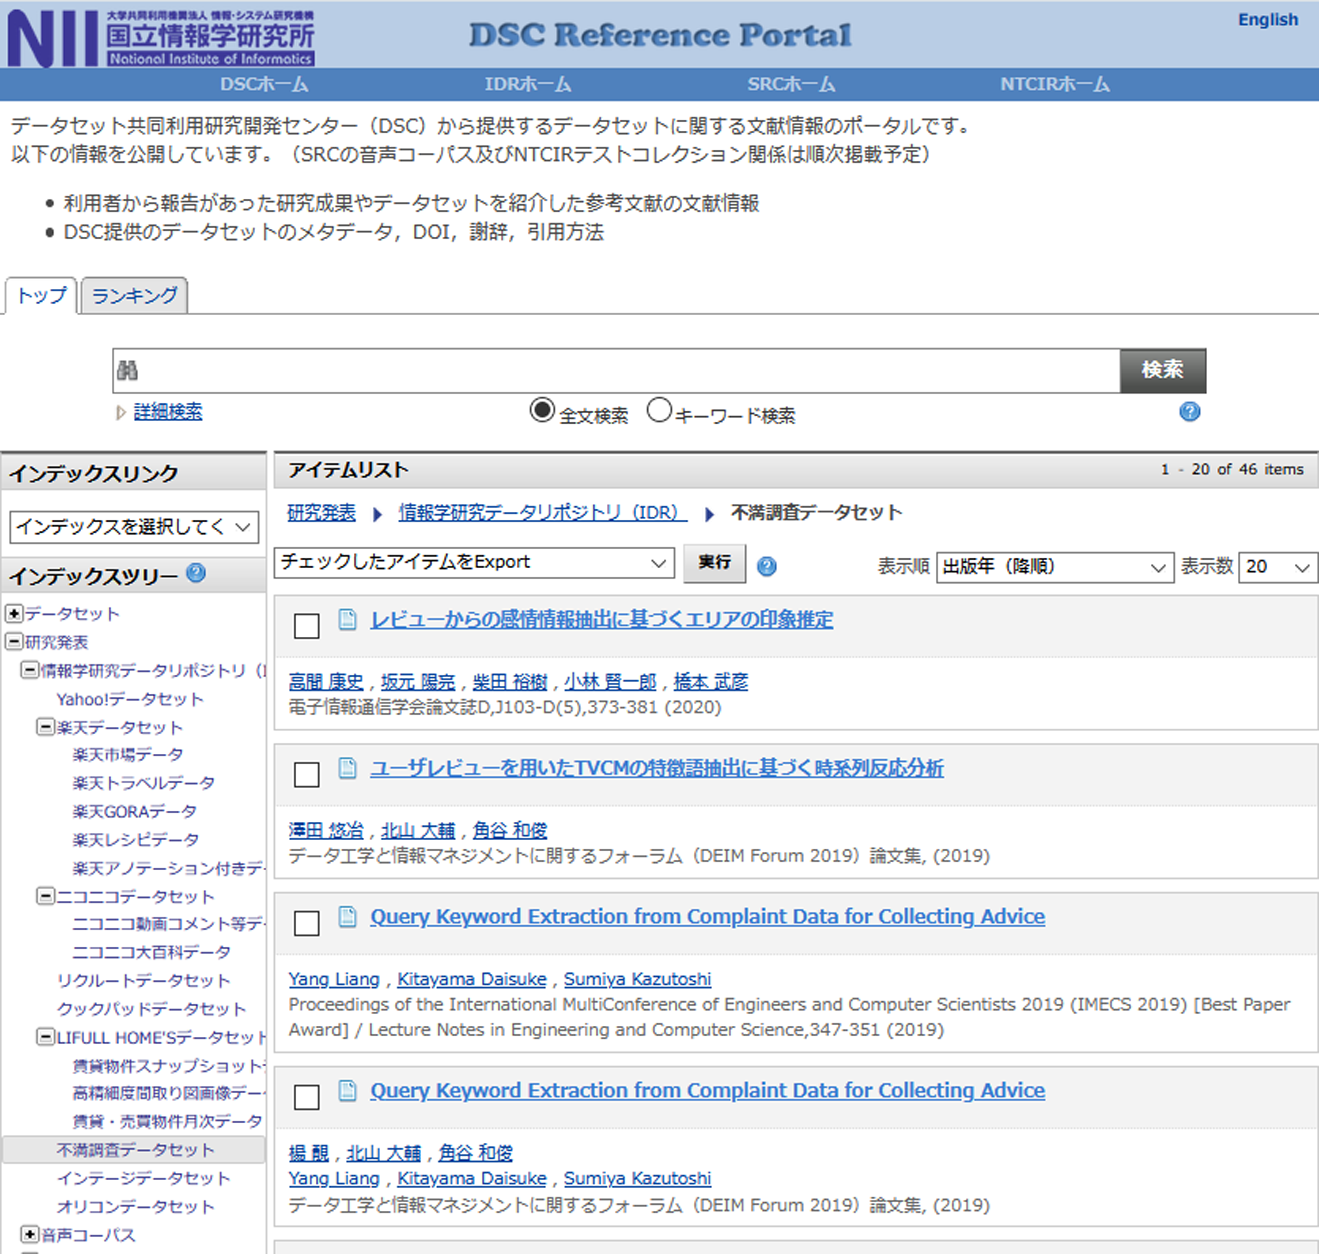 提供データセットを利用した研究成果のリストを公開するリポジトリの画面サンプル　Screenshot of the DSC Reference Portal that shows research articles using the provided datasets.